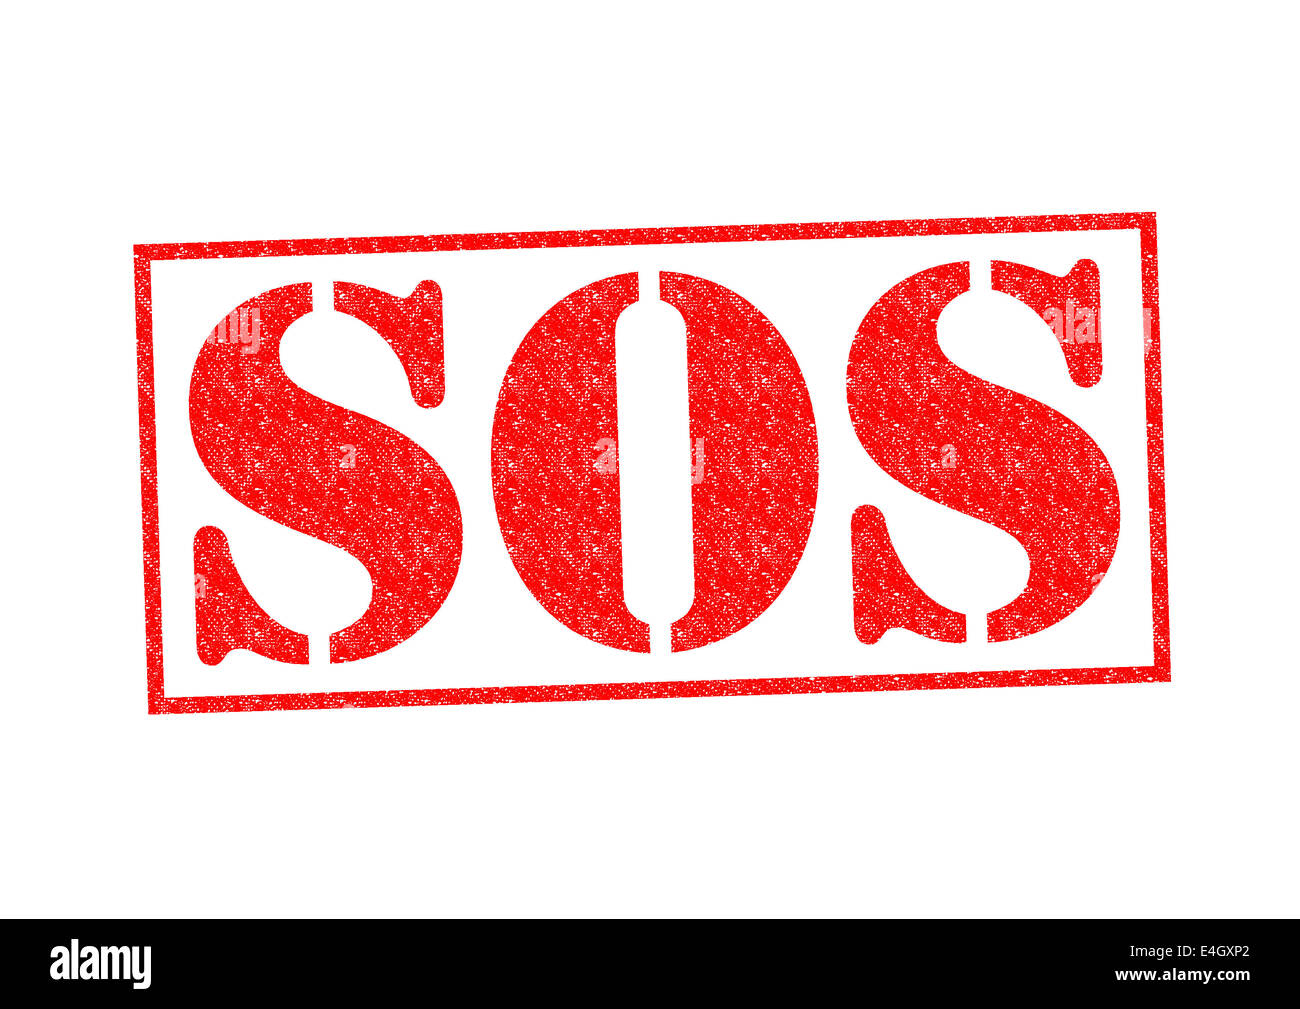 SOS Tampon de caoutchouc sur un fond blanc Photo Stock - Alamy